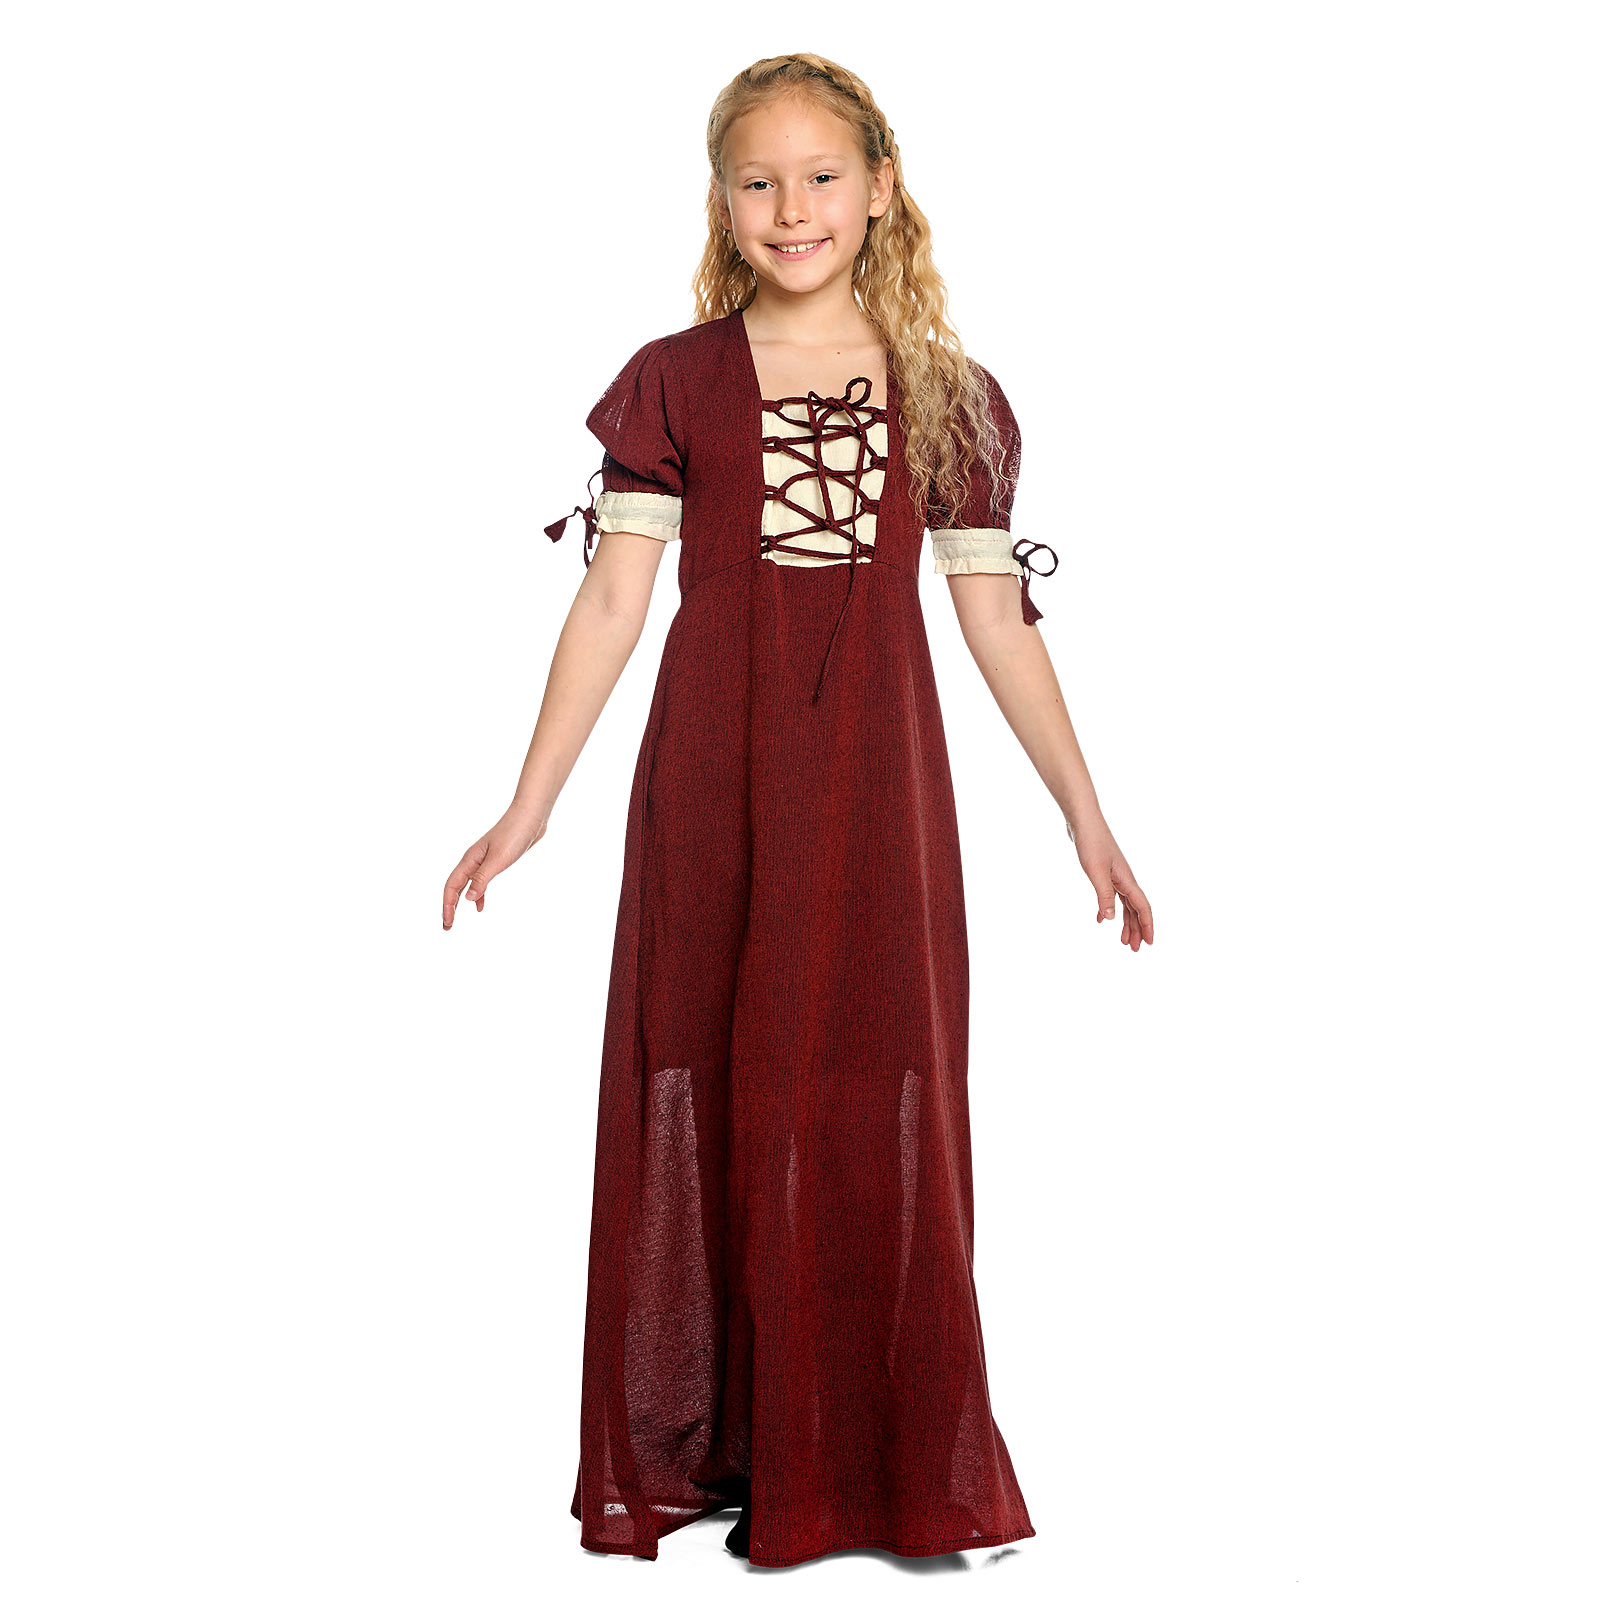 Mittelalter Sommer Kleid Kinder rot beige